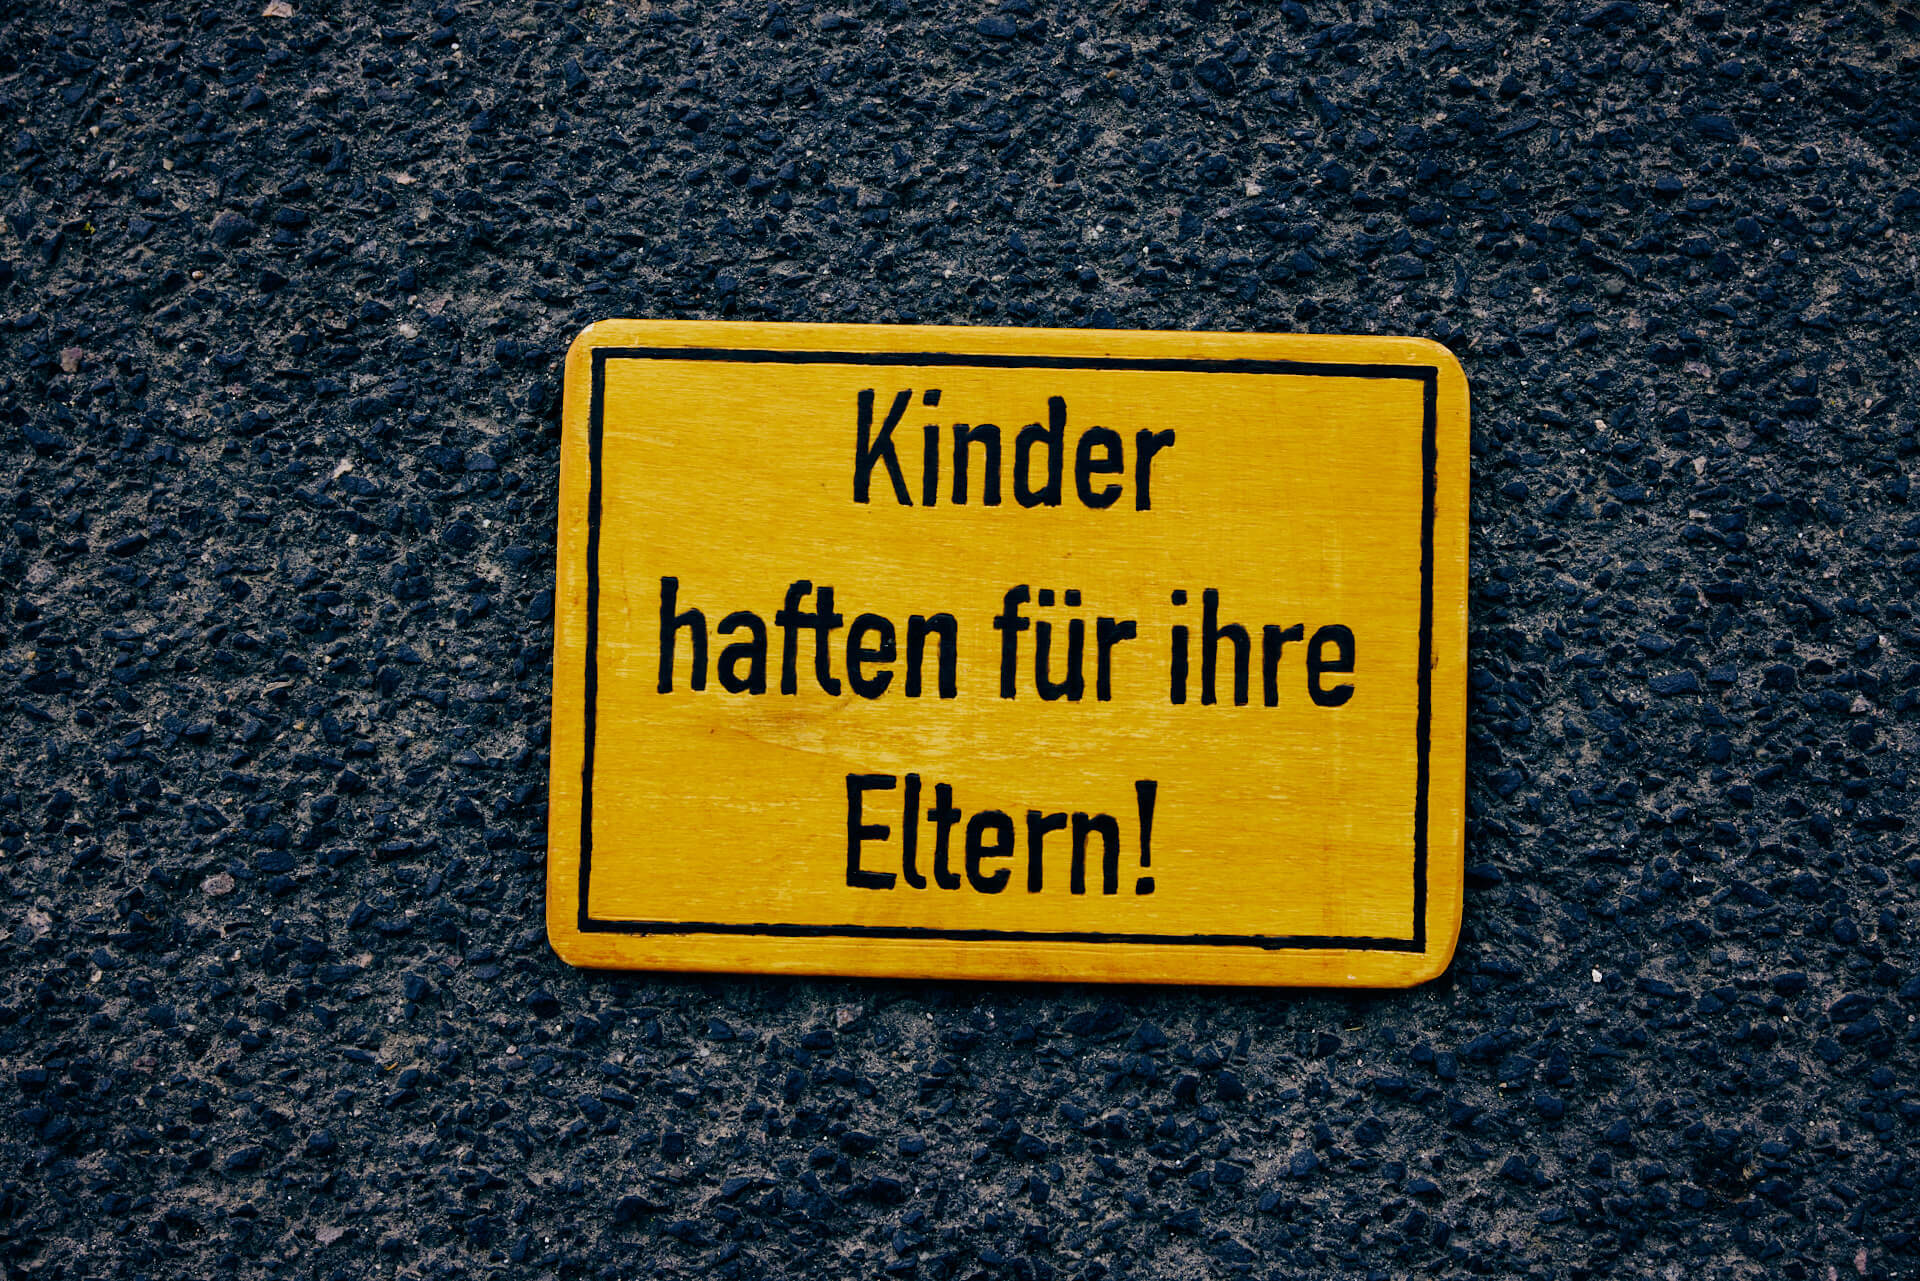 Exhibition sign „Kinder haften für ihre Eltern!“ – “Children are liable for their parents!” (Photo: Niko Martin)